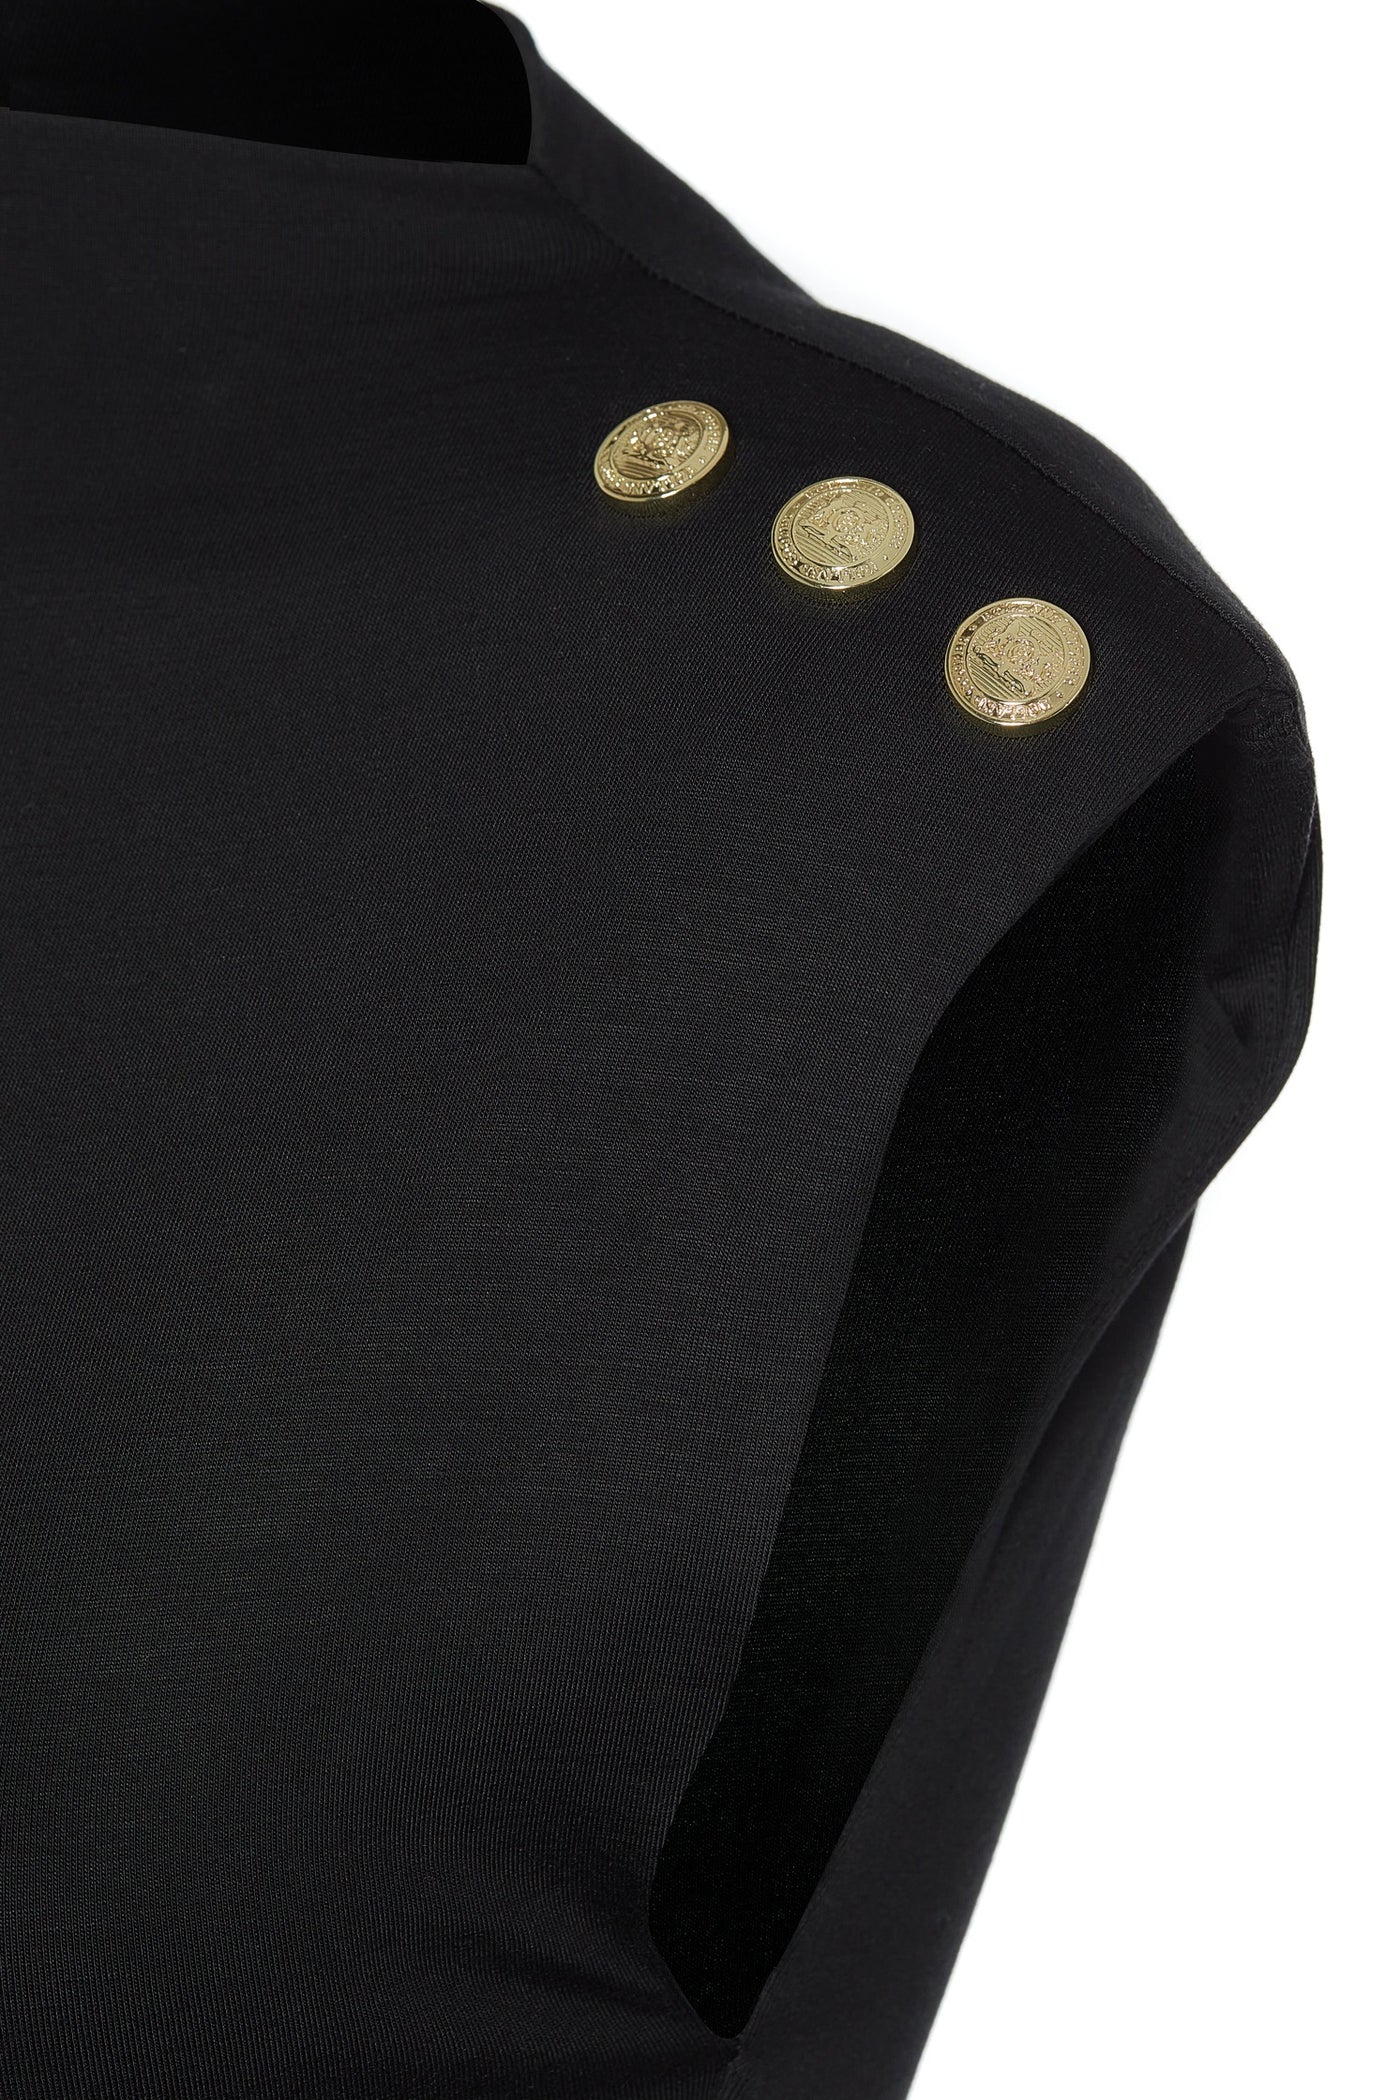 Holland Cooper Harper Sleeveless Mini Dress in Black Detail